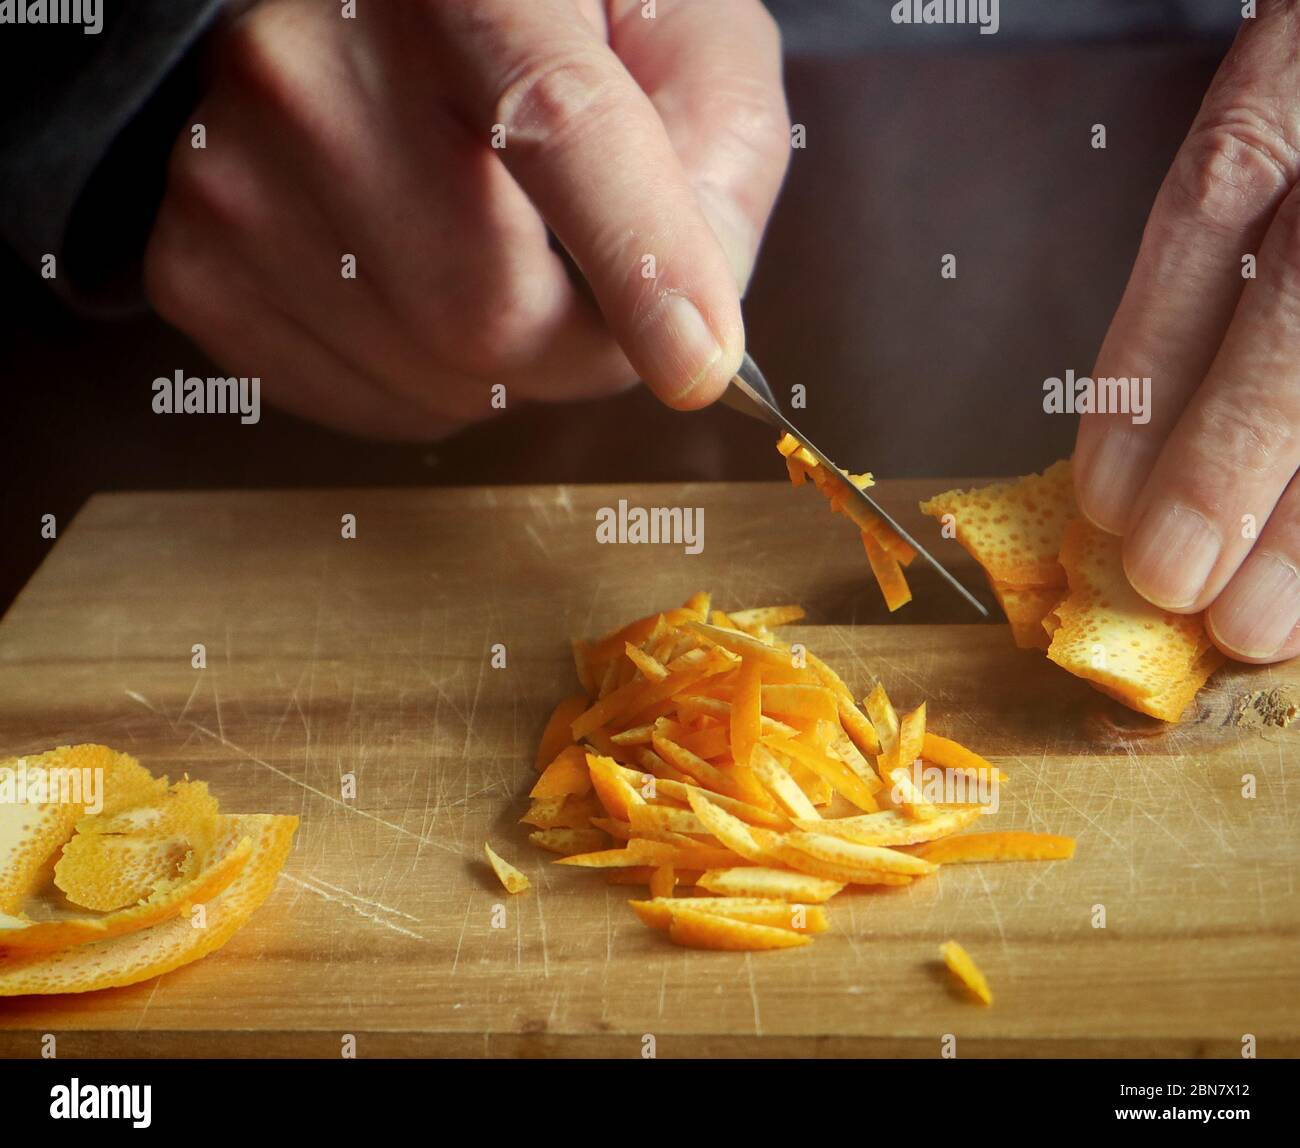 Preparazione della marmellata d'arancia: Tagliando con un coltello affilato la scorza d'arancia in piccole fette per aggiungerla alla conserve fatta in casa Foto Stock